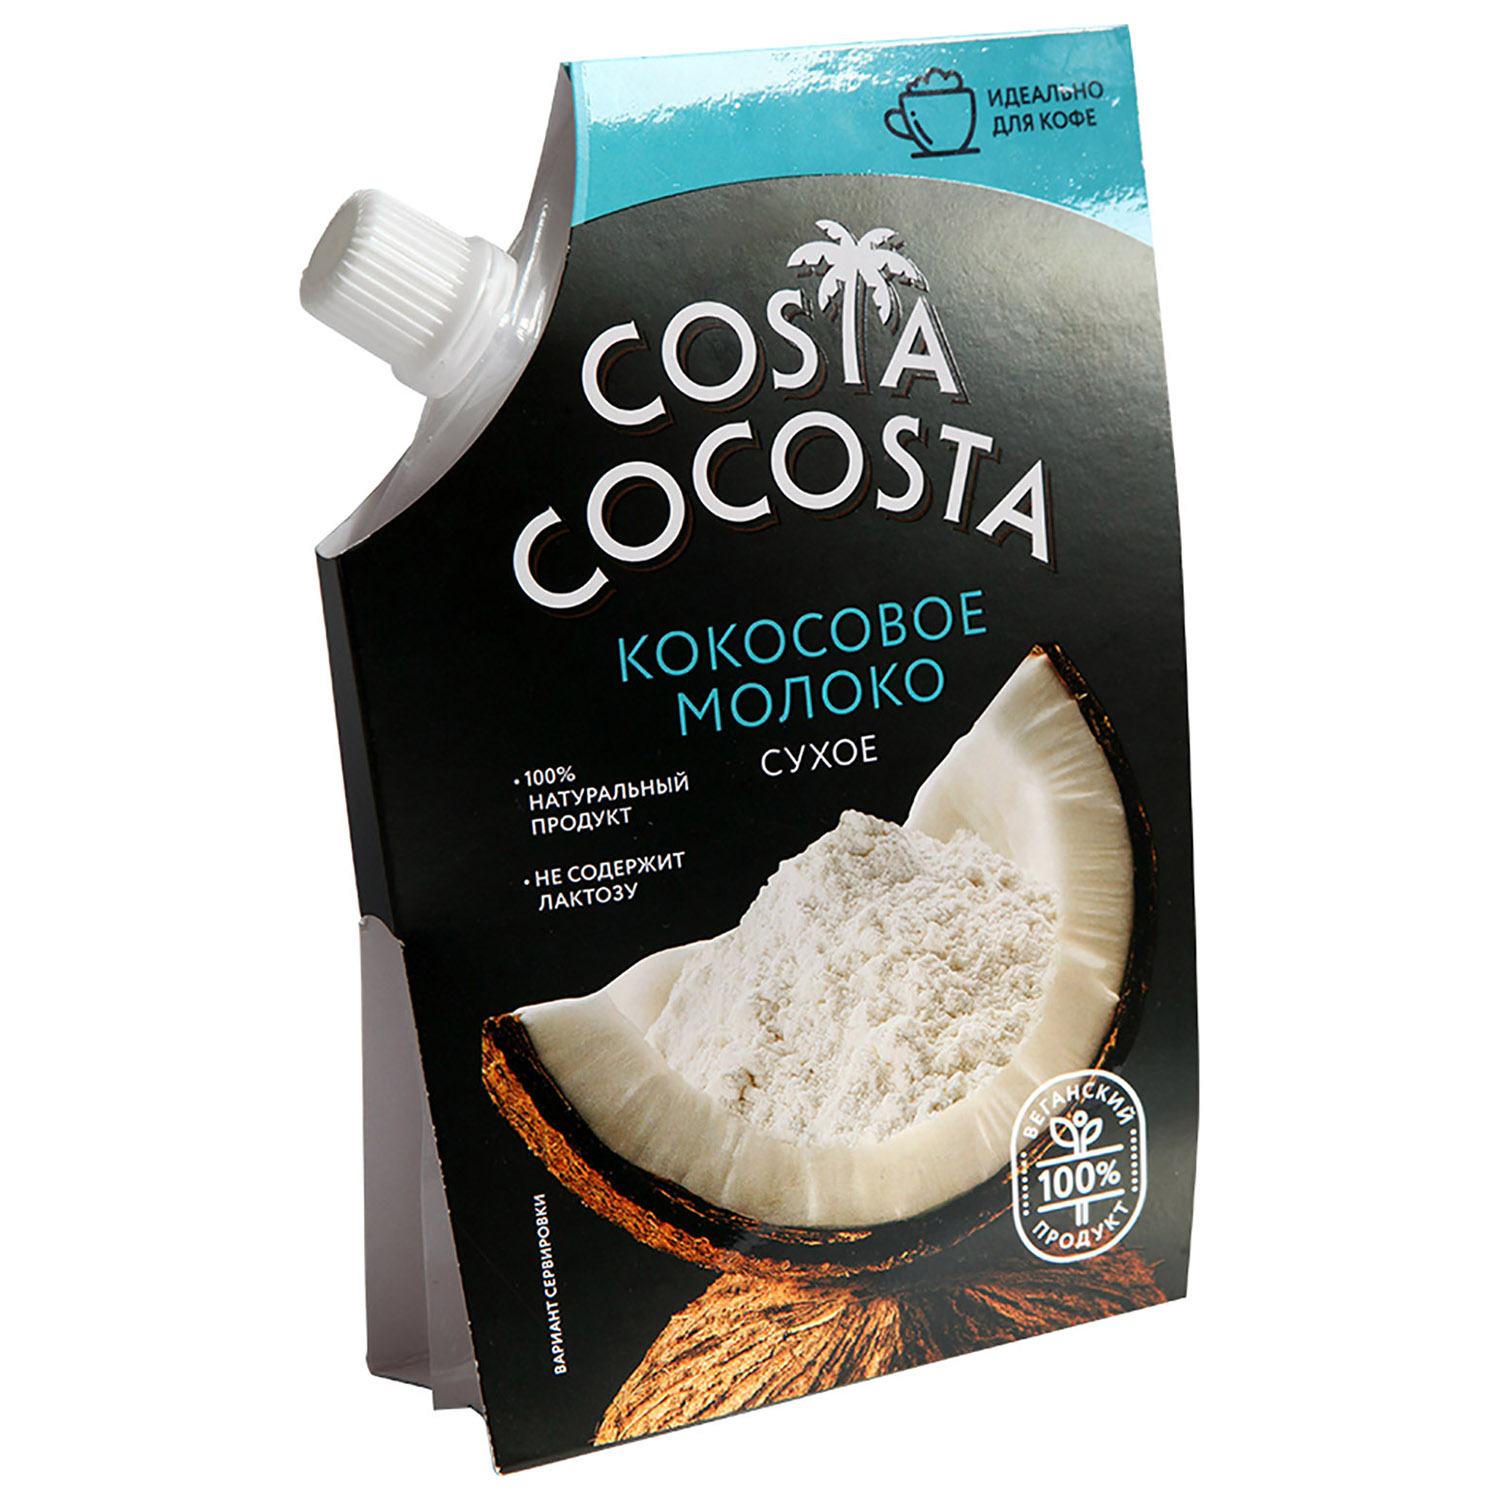 Молоко Costa Cocosta сухое кокосовое 80г - фото 1